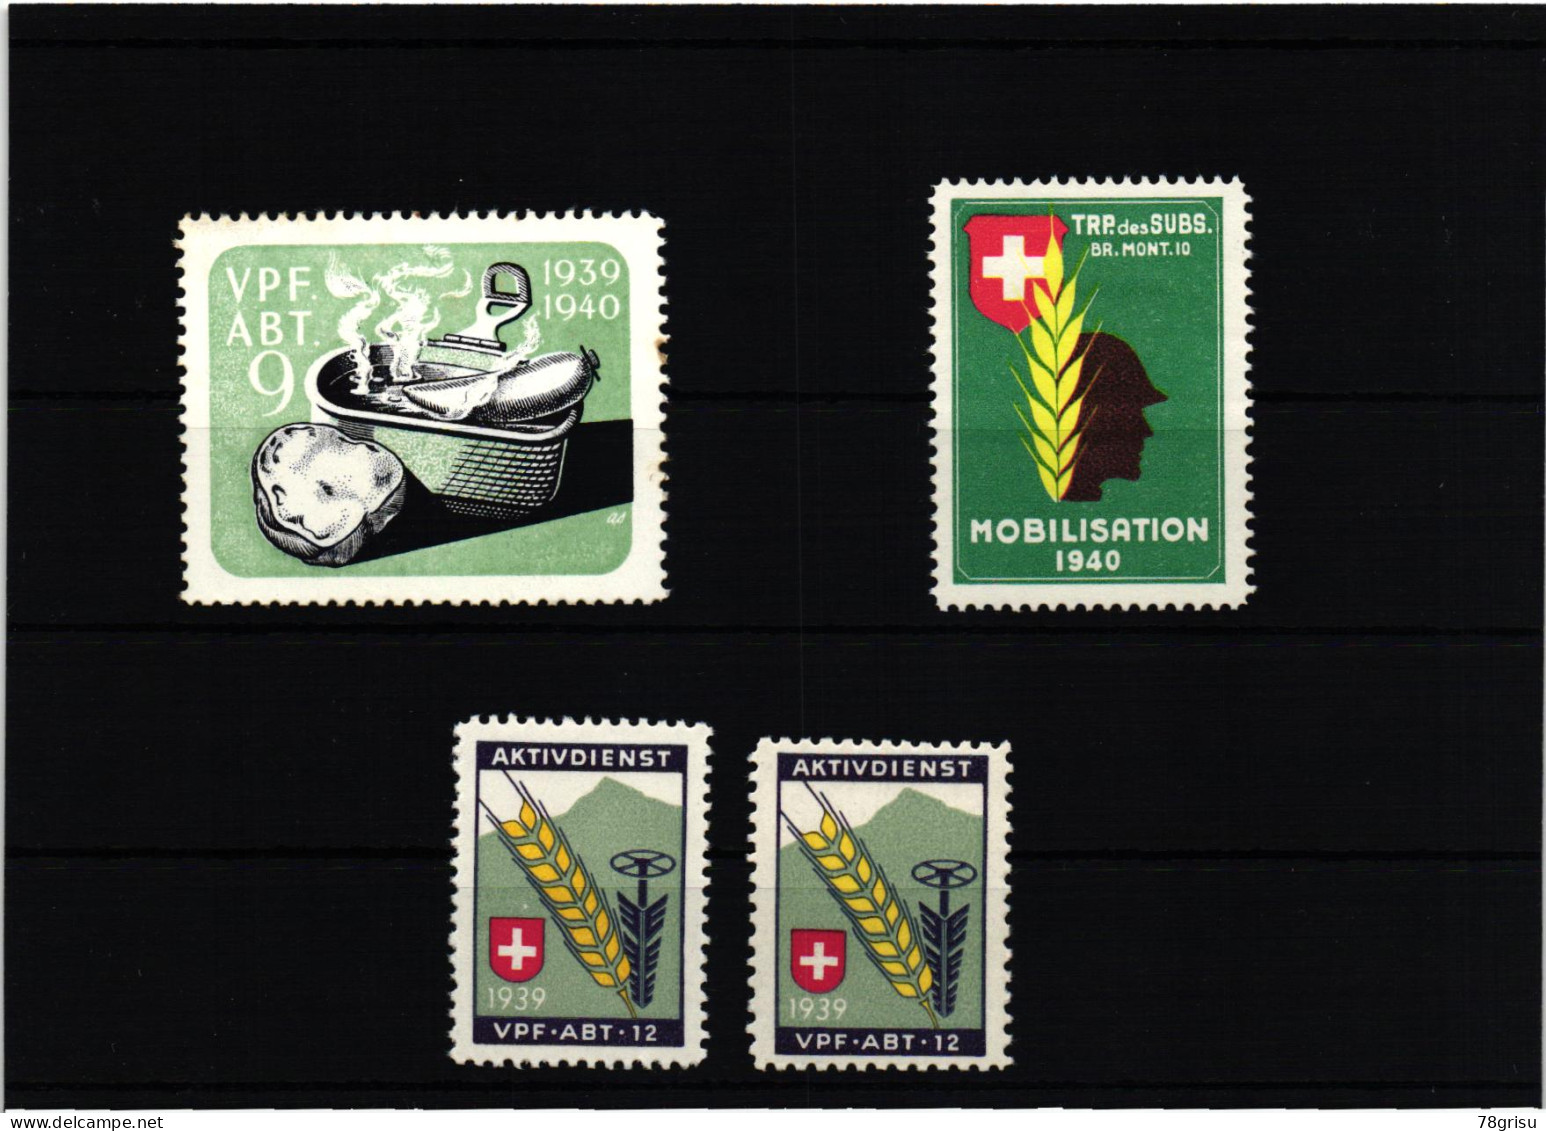 Schweiz Soldatenmarken, Vpf.Abt. Verpflegungs Abteilung 1939 1940 TRP. Des SUBS.  - Vignettes